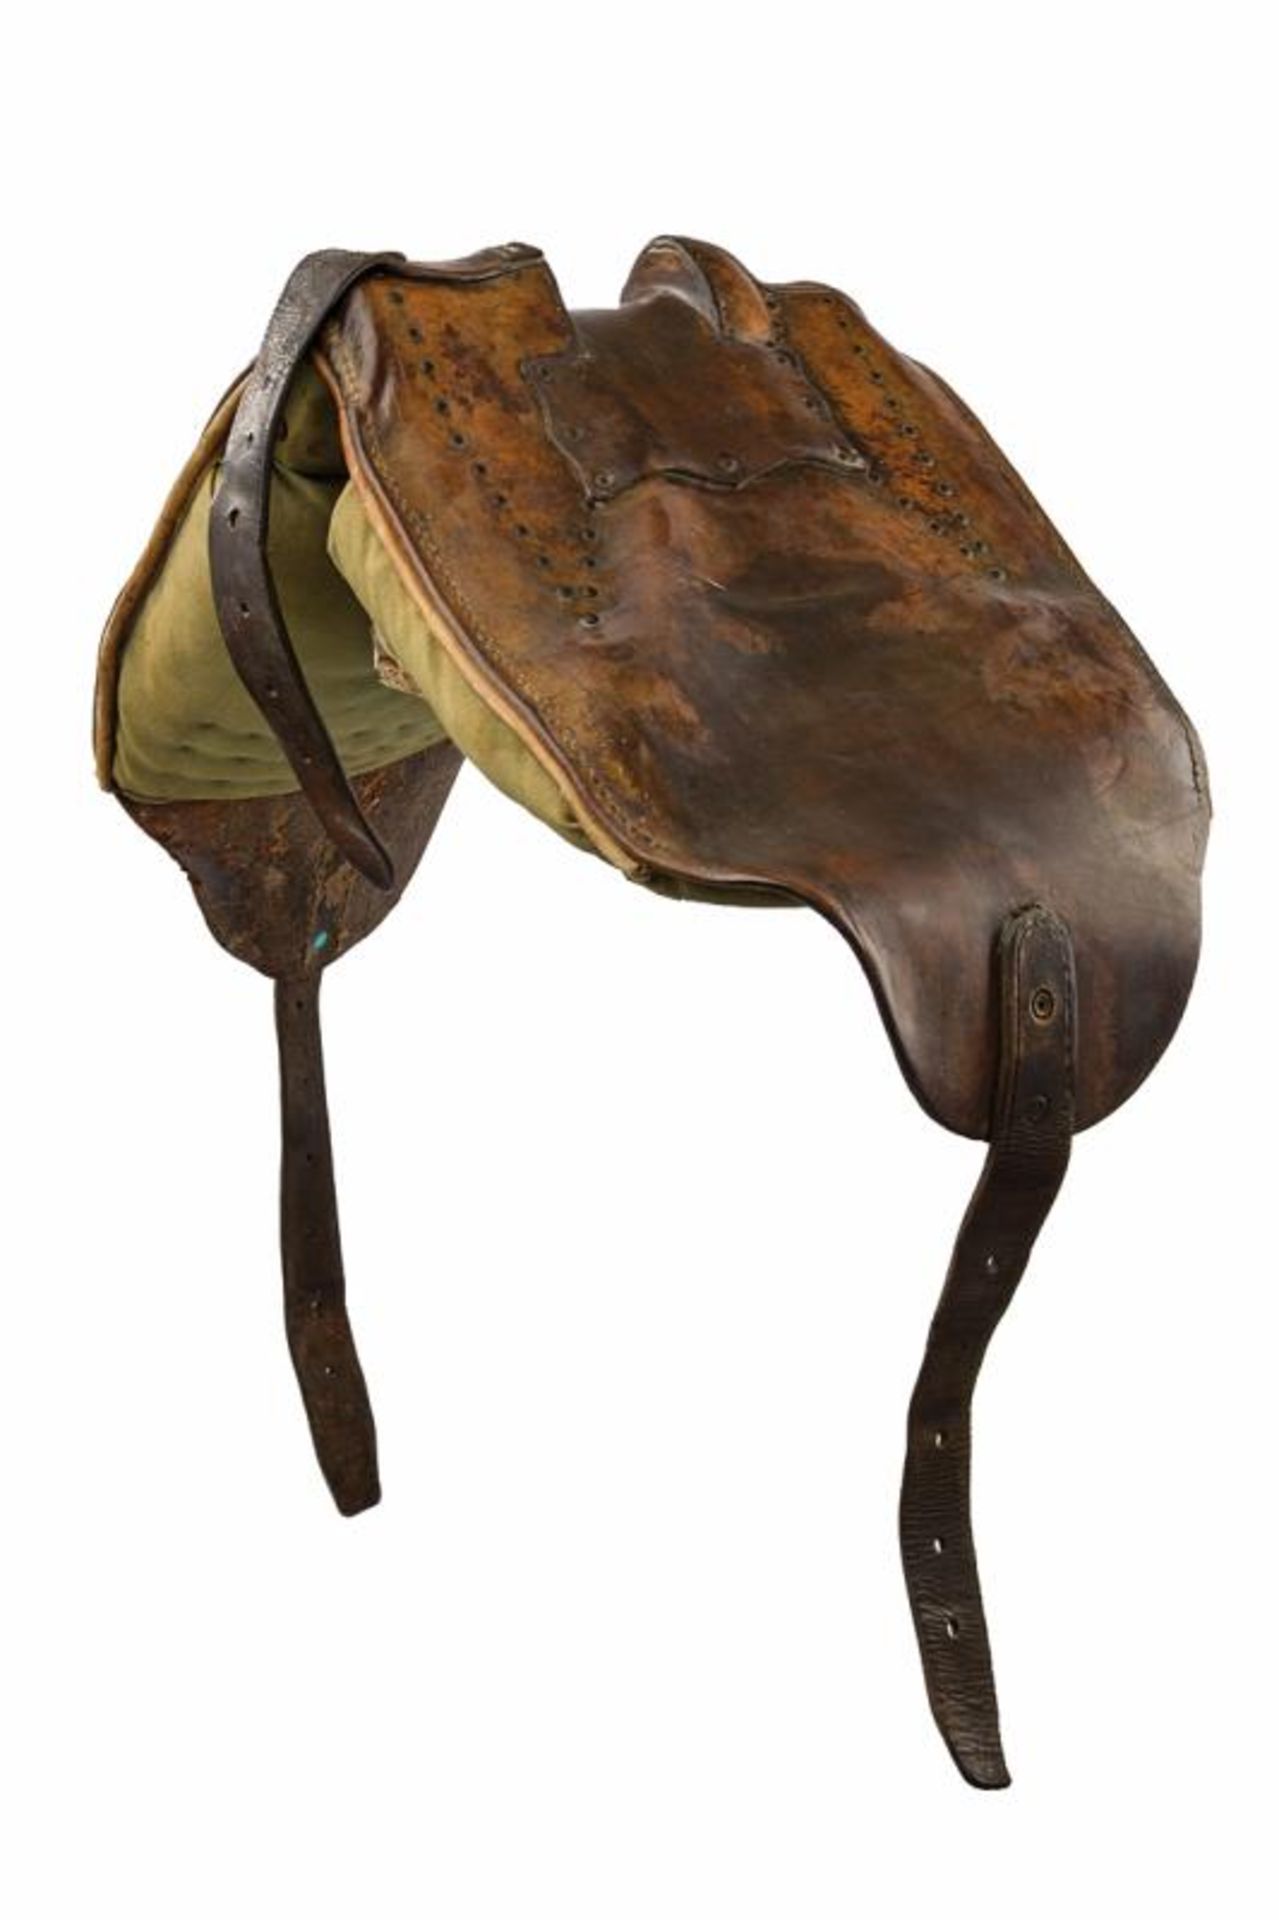 A Percheron horse saddle